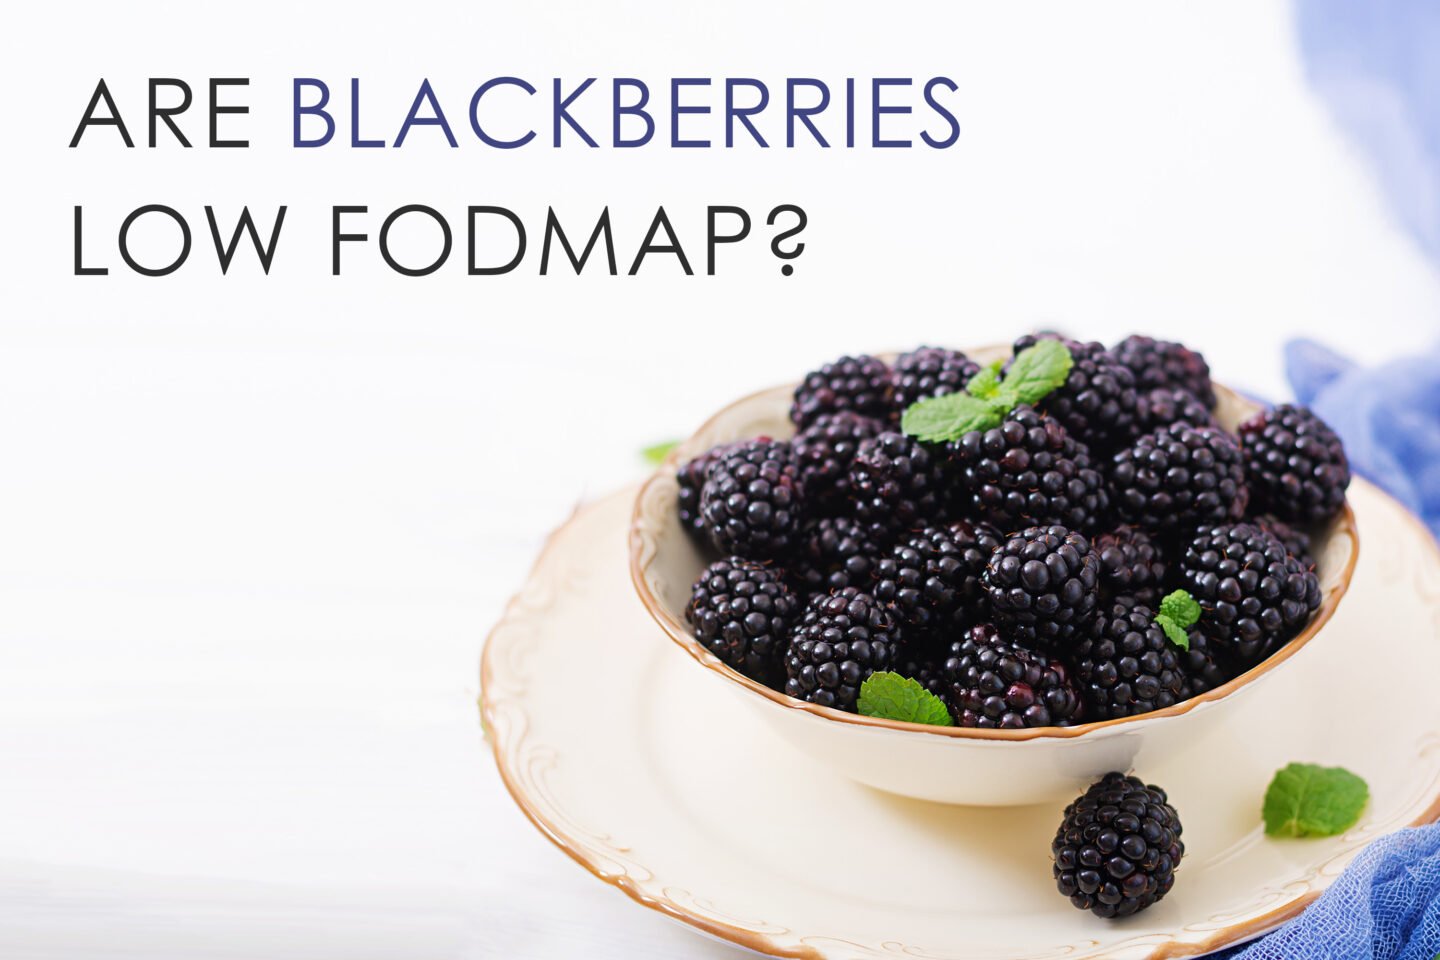 are blackberries low foodmap food